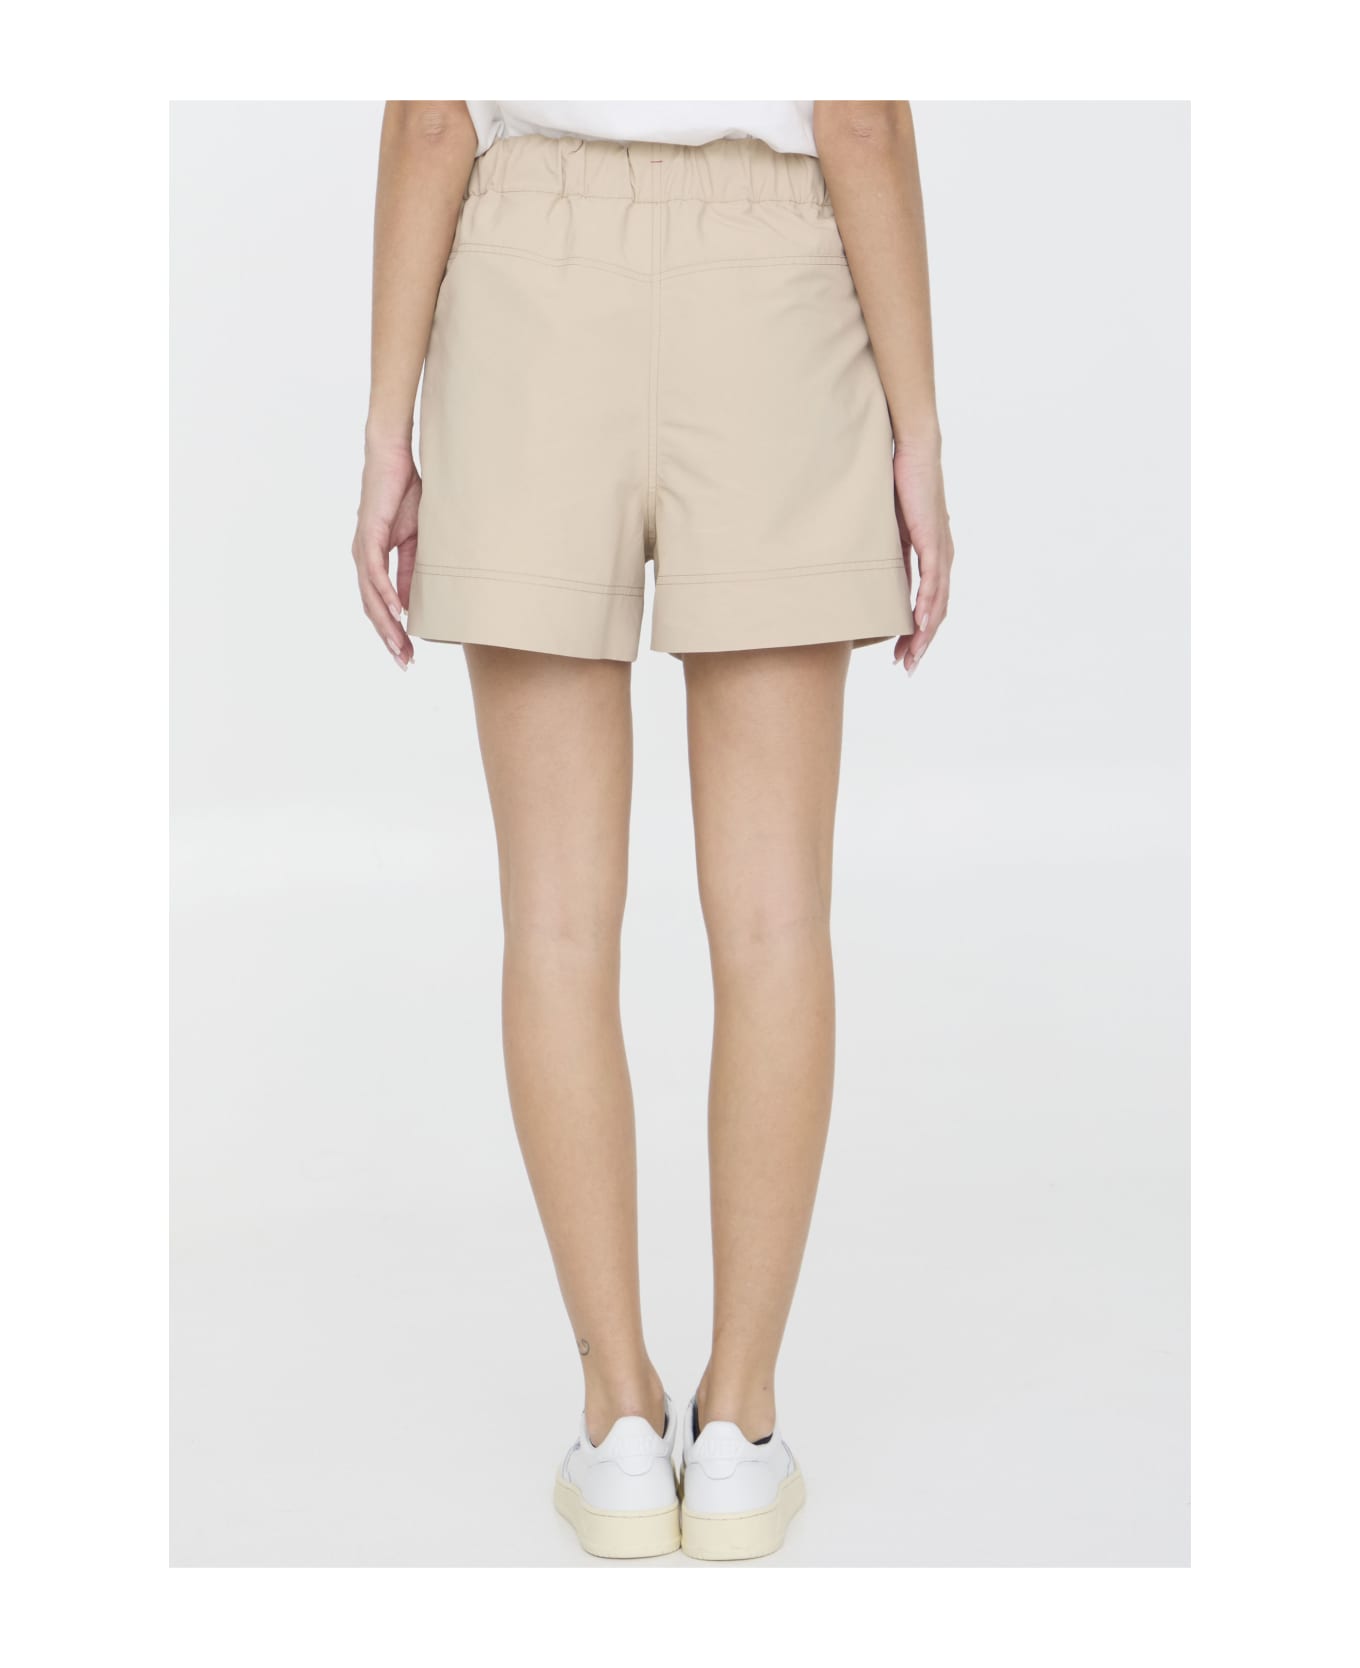 Moncler Grenoble Nylon Shorts - BEIGE